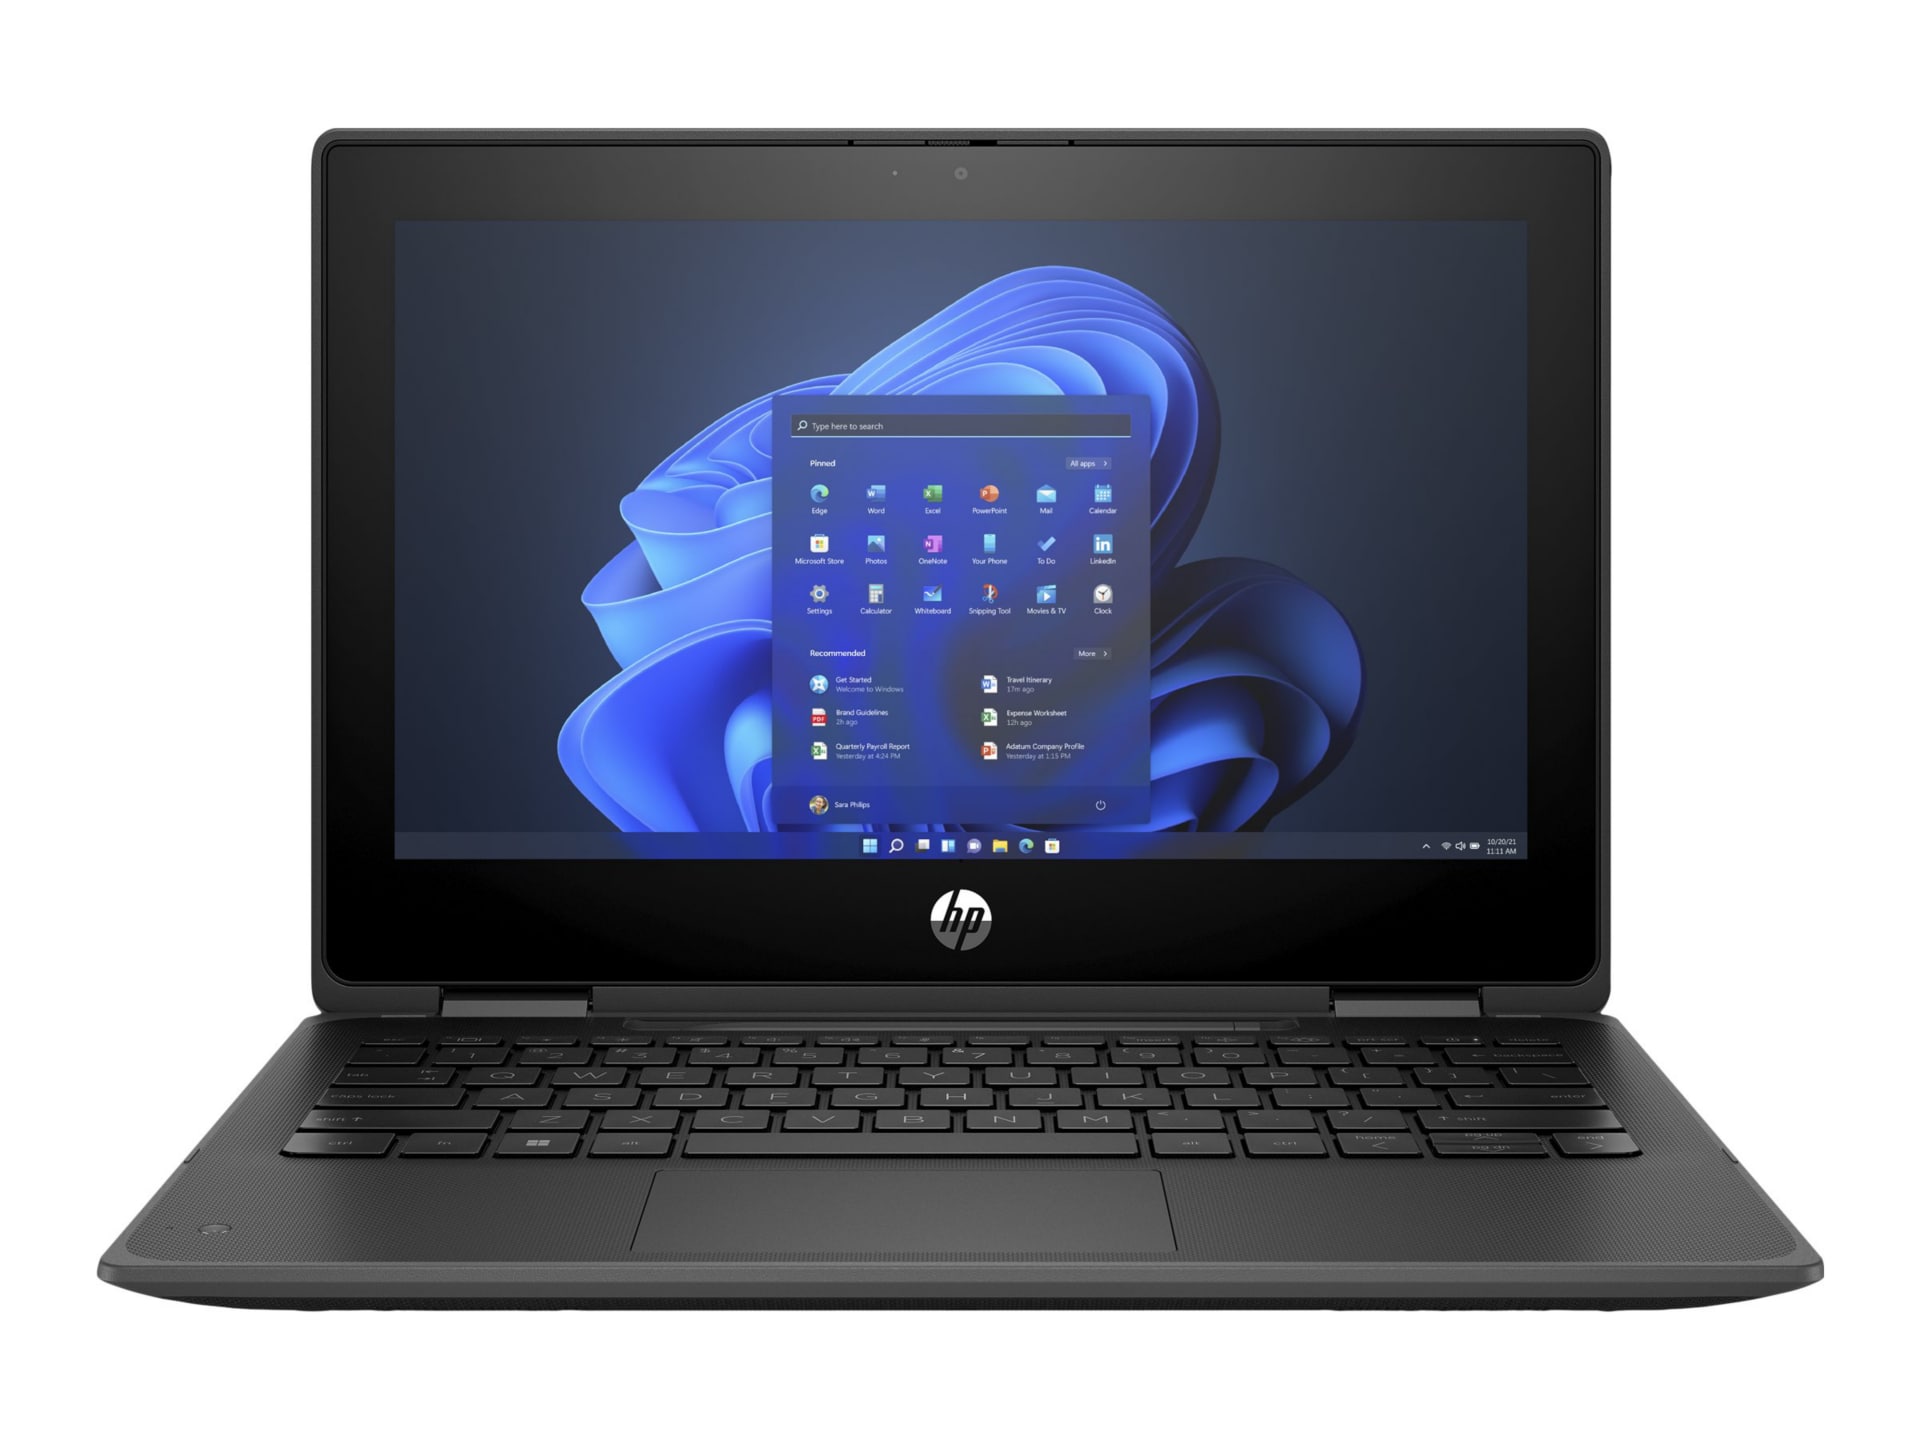 HP ProBook x360 11.6" Touchscreen Convertible 2 in 1 Notebook - HD - 1366 x